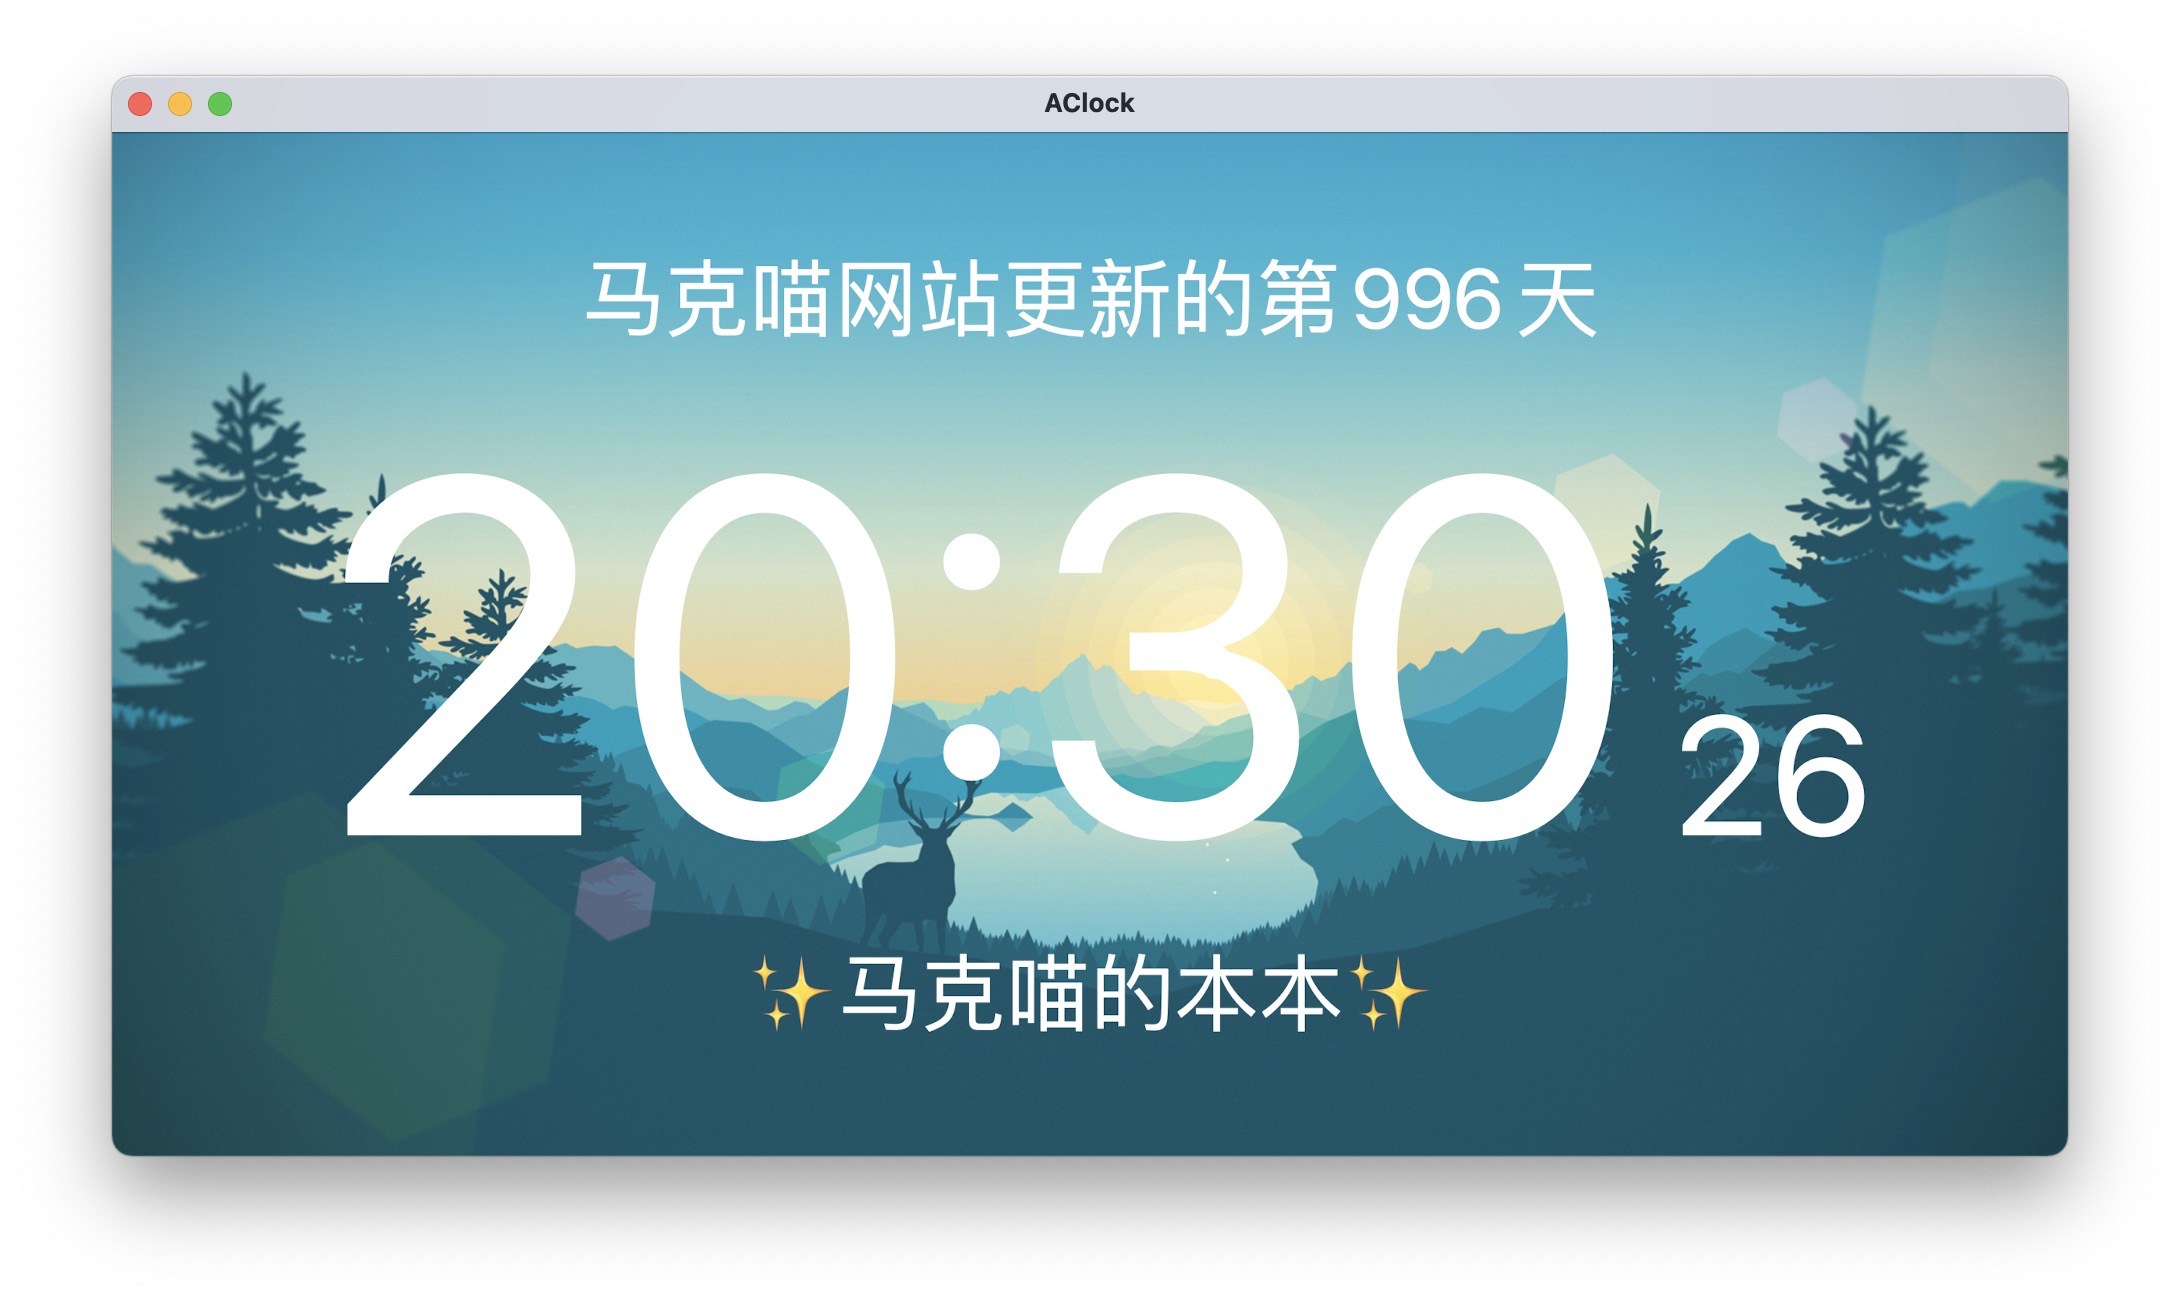 AClock 2.3中文版 翻页时钟屏保制作